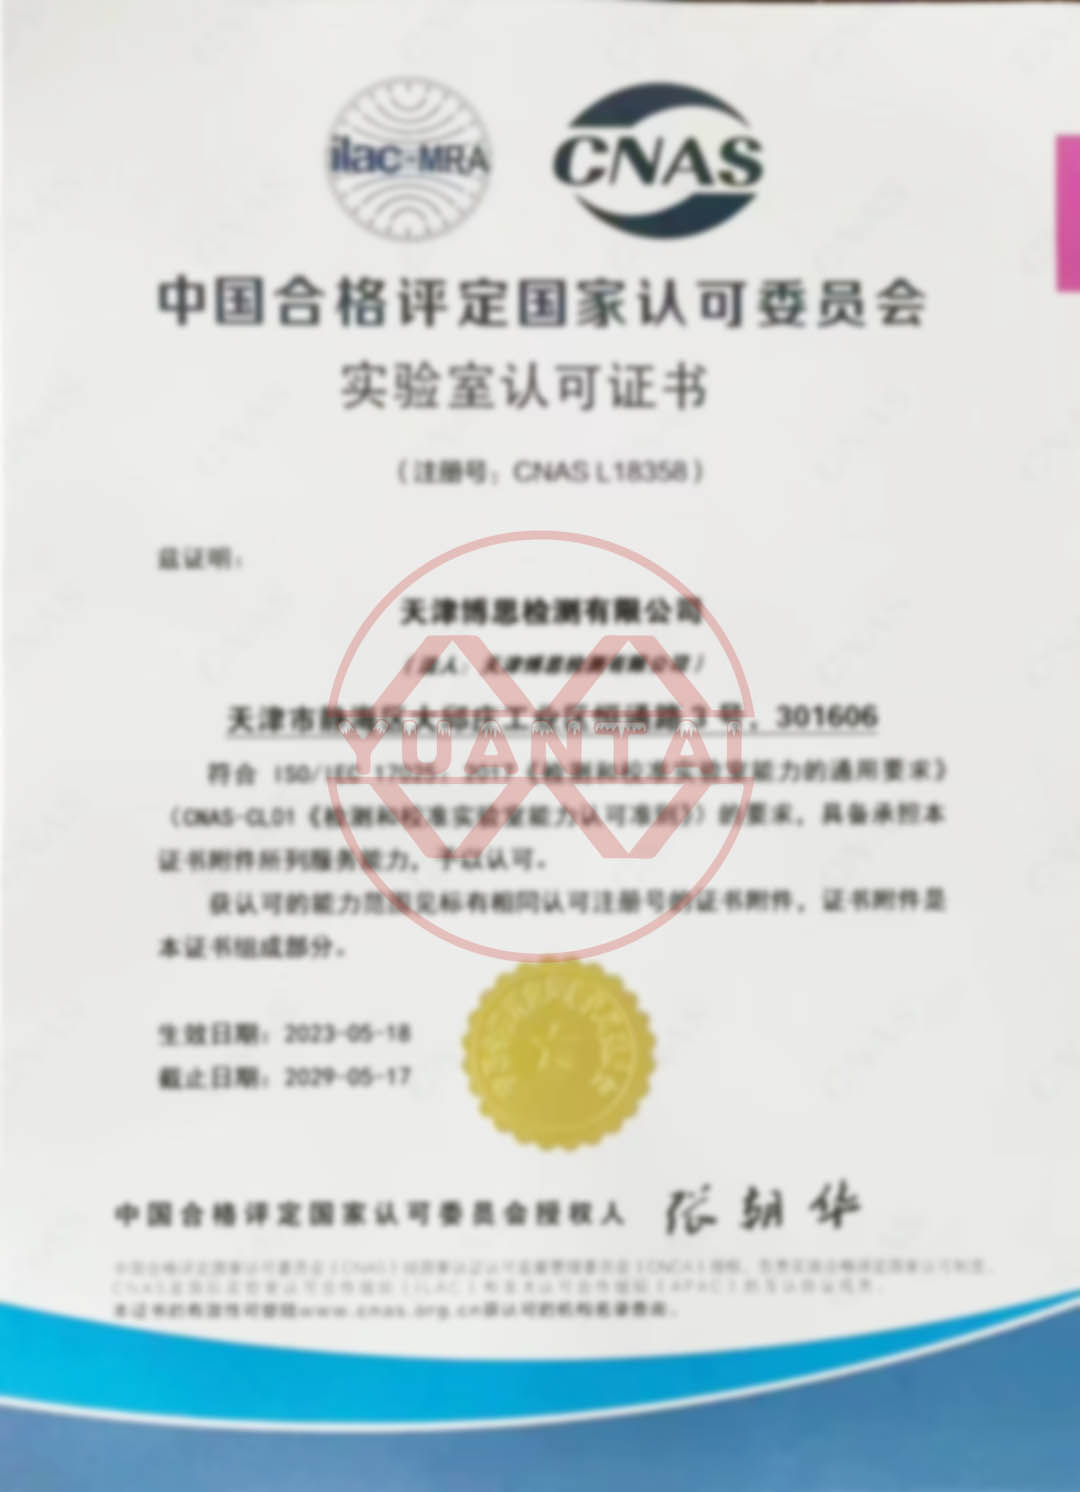 Gratulationes ad Tianjin Bosi Testis Co, Ltd., subsidiarium Yuantai Derun Ferro Pipe Group, pro transeundo certificatione CNAS.